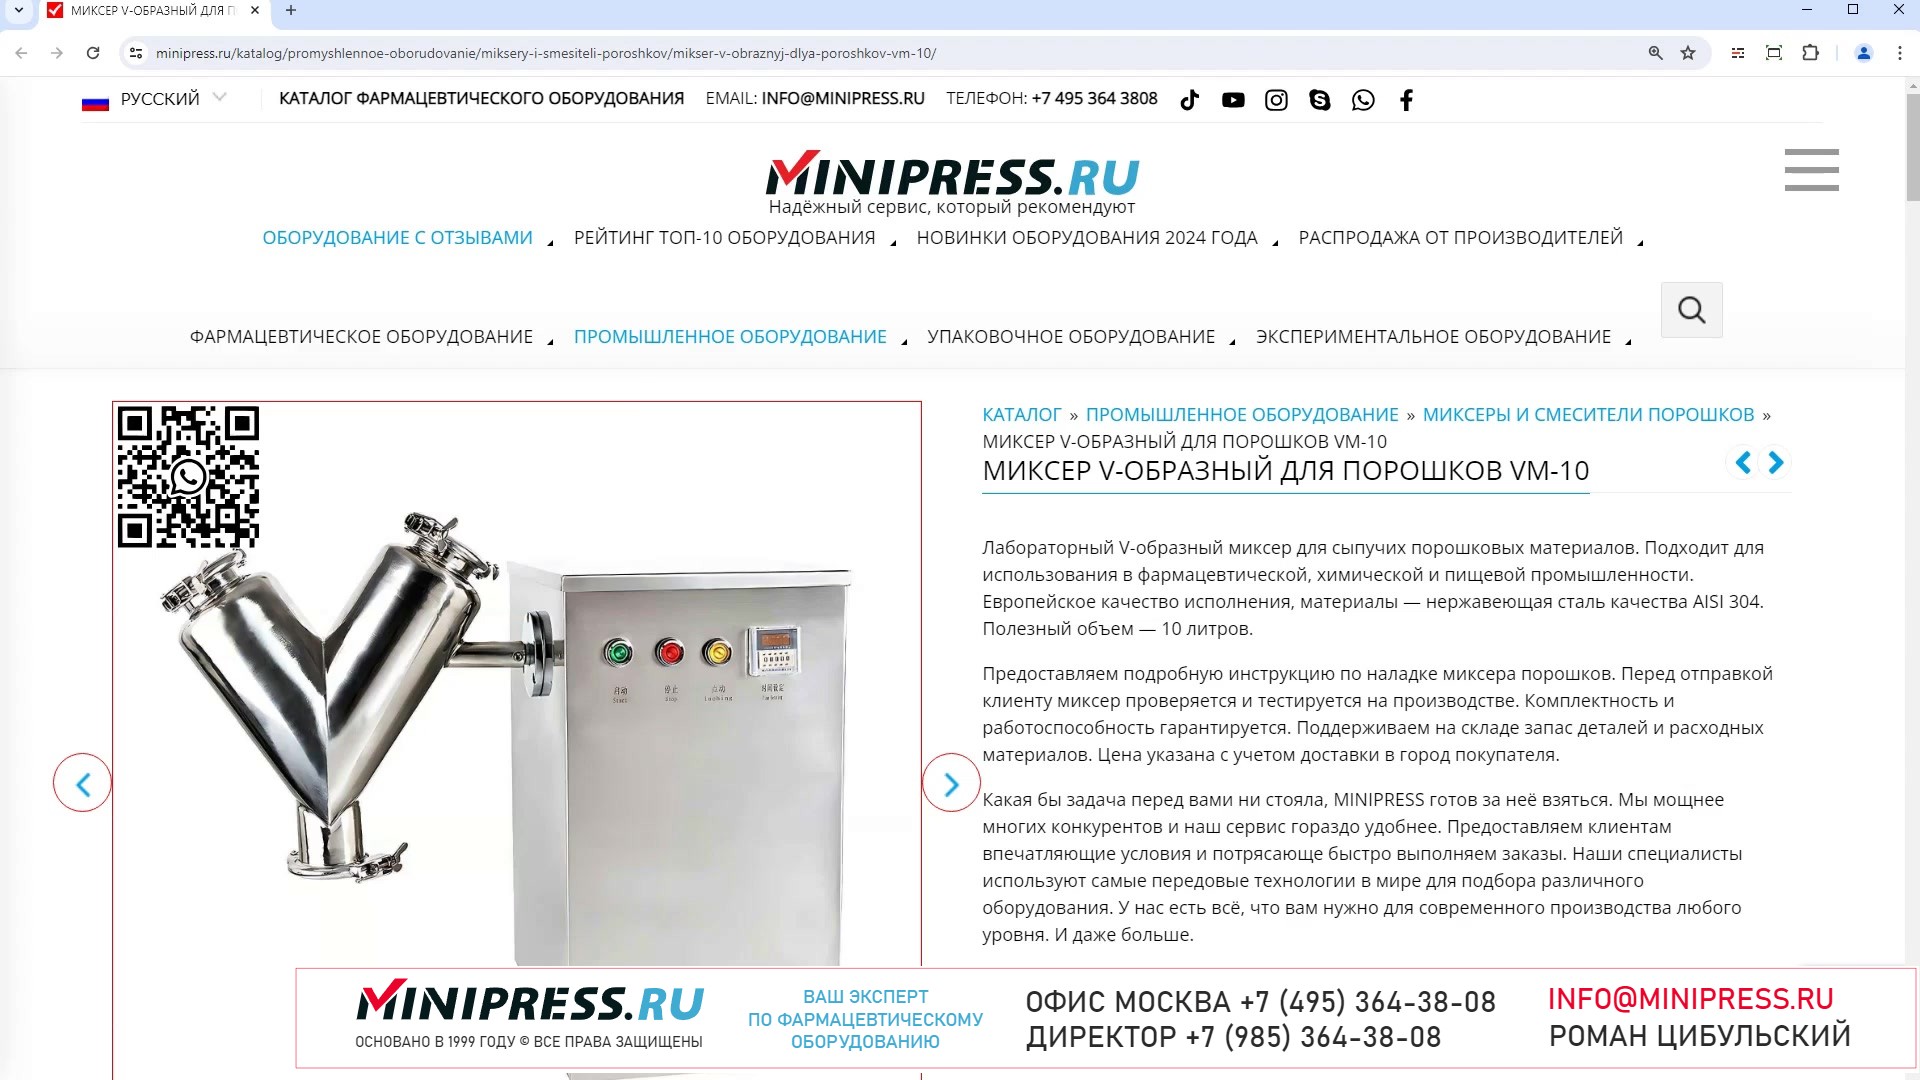 Minipress.ru Миксер V-образный для порошков VM-10